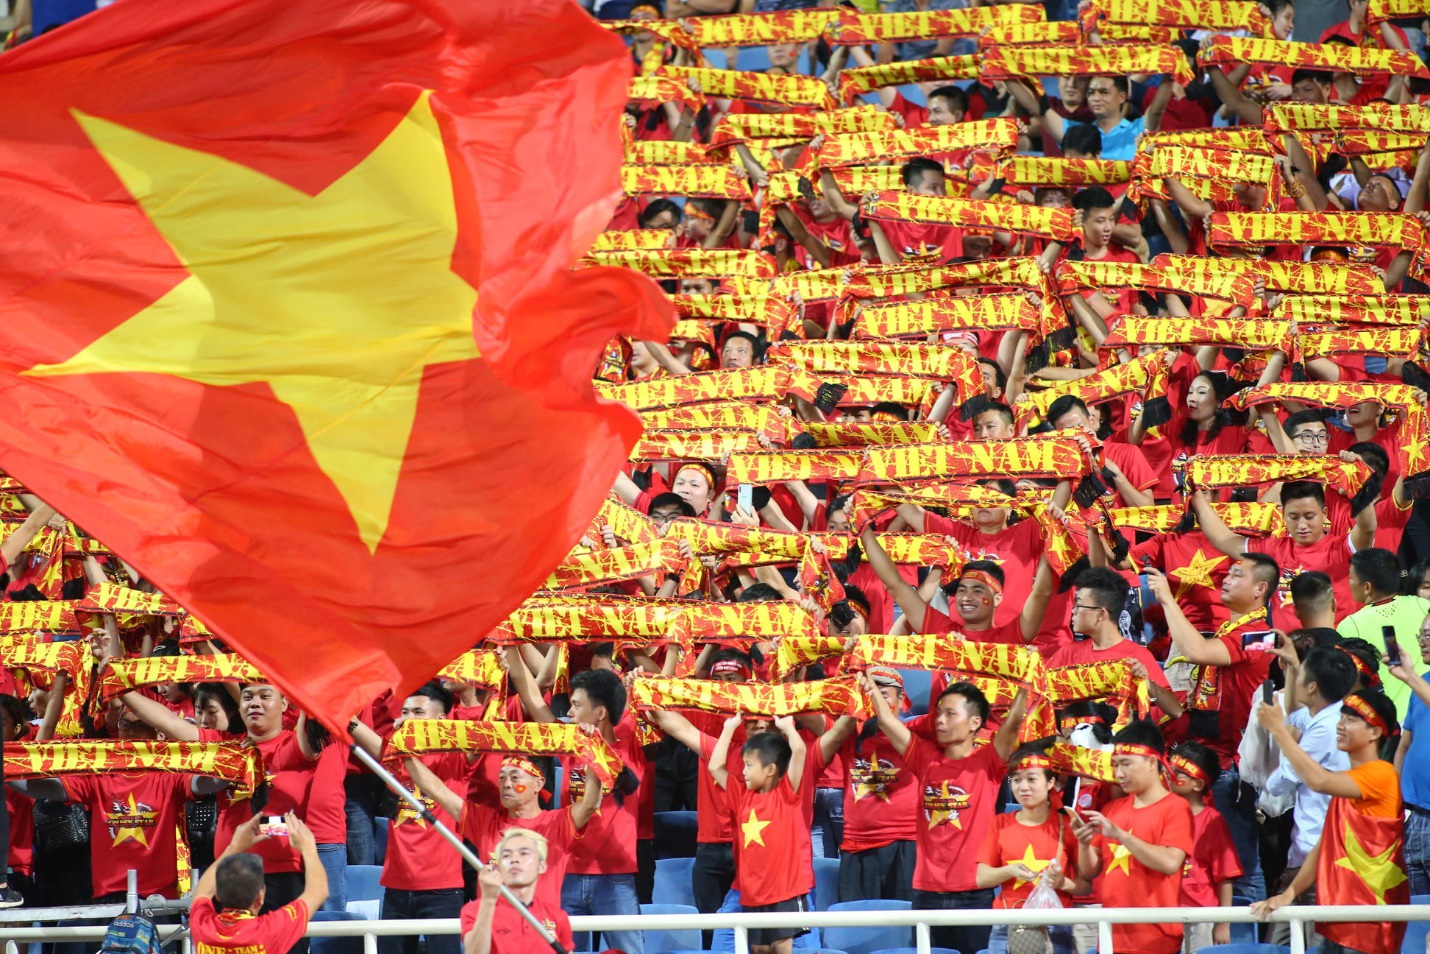 Vé trận đội tuyển Việt Nam - Nhật Bản giá cao nhất 1,2 triệu đồng - Ảnh 2.